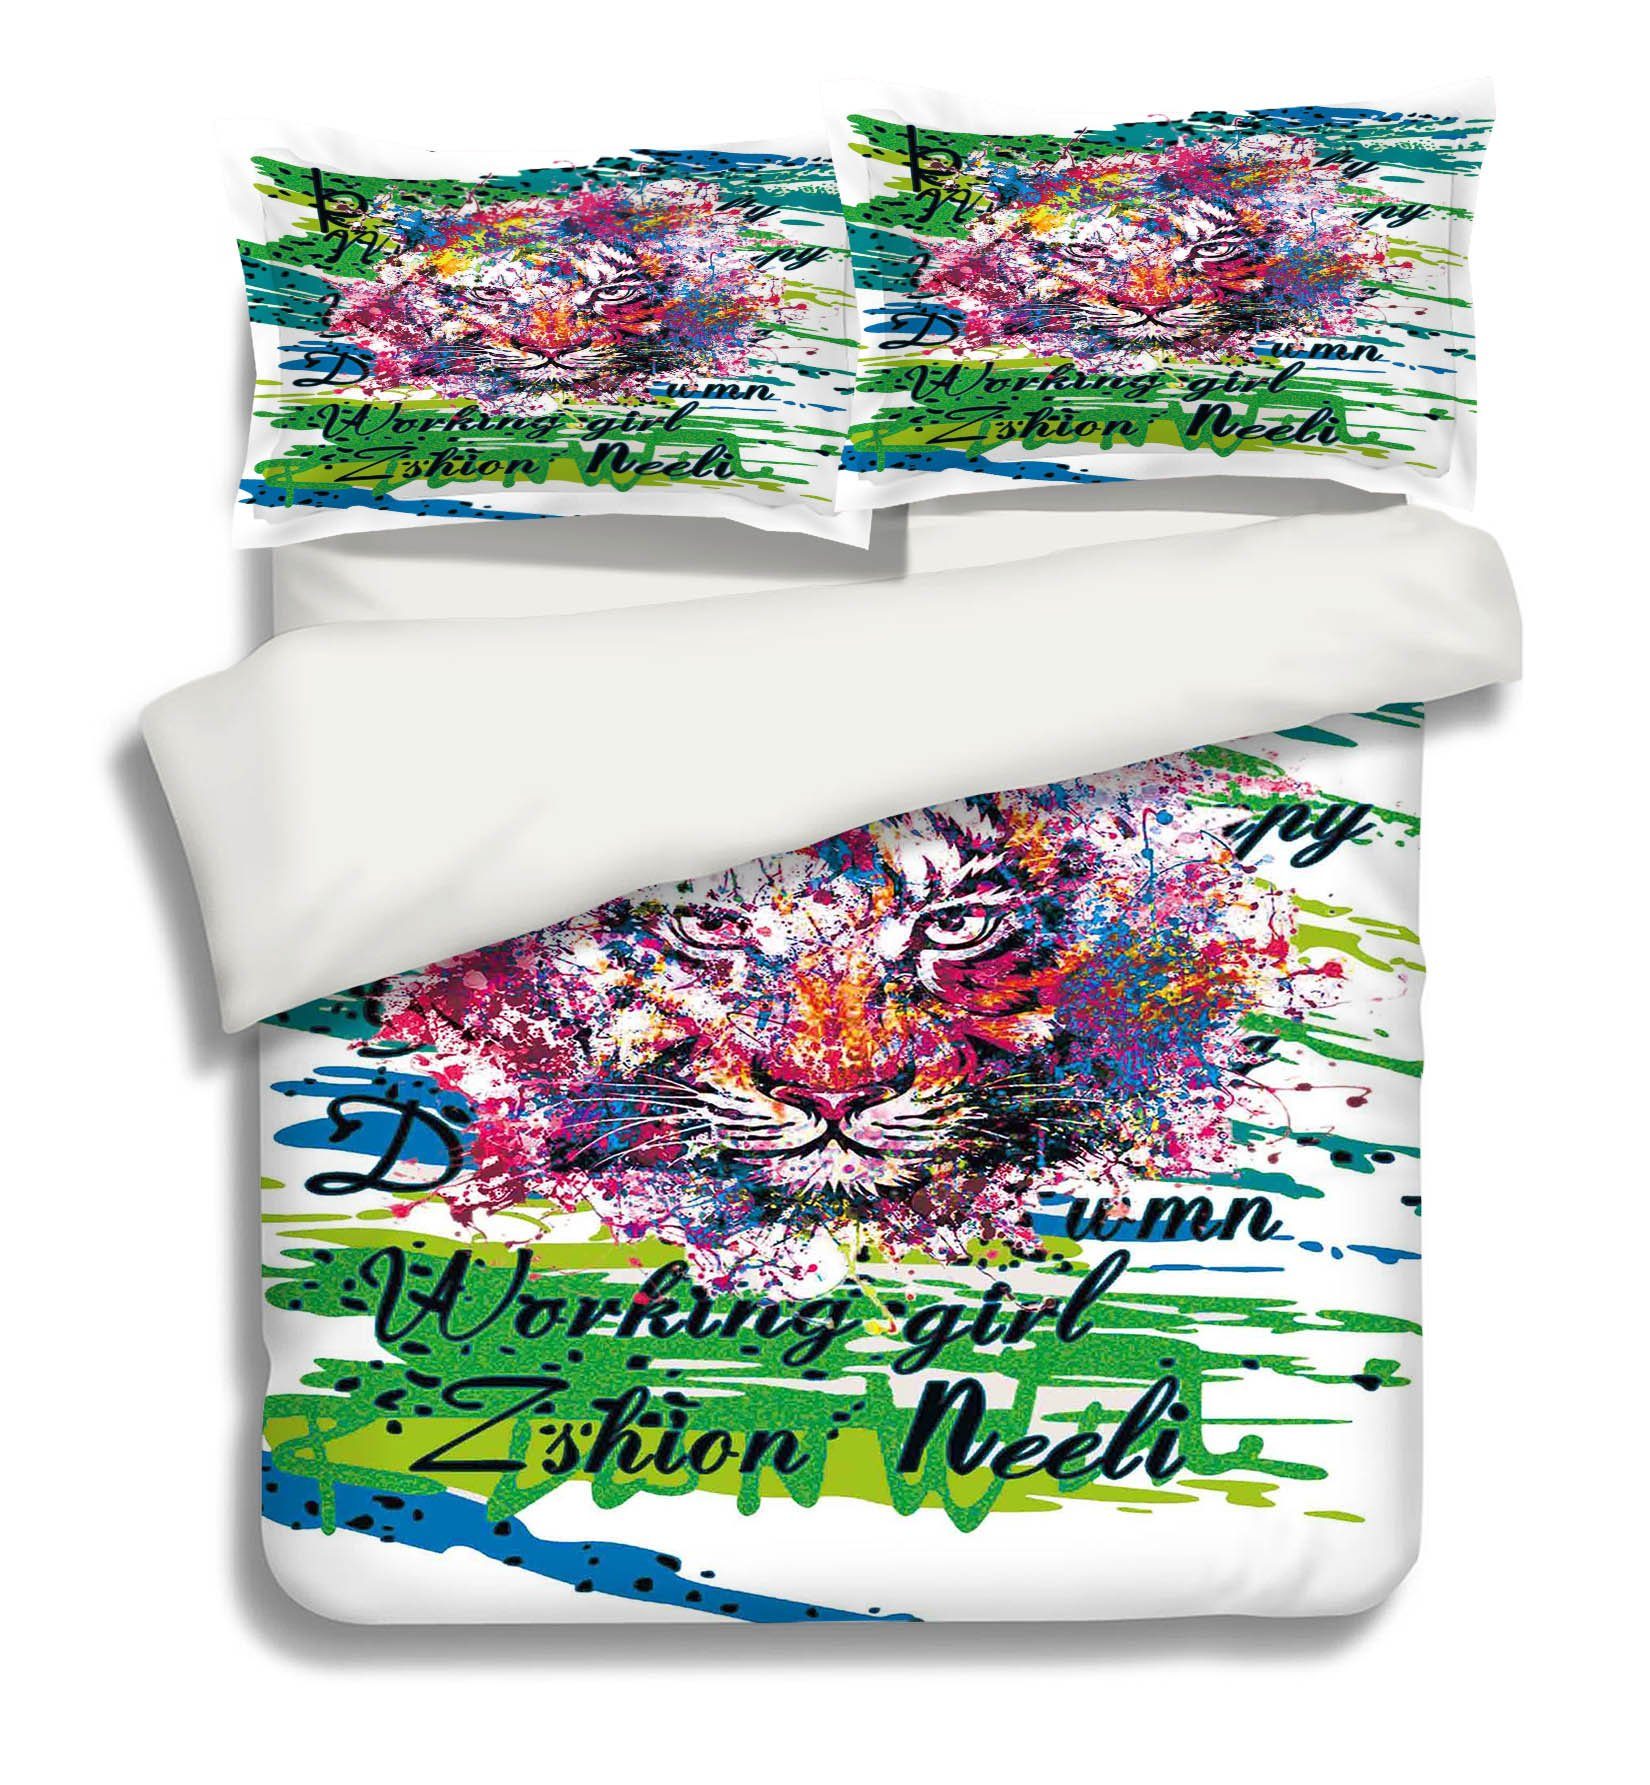 3D Graffiti Tiger 145 Bed Pillowcases Quilt Wallpaper AJ Wallpaper 